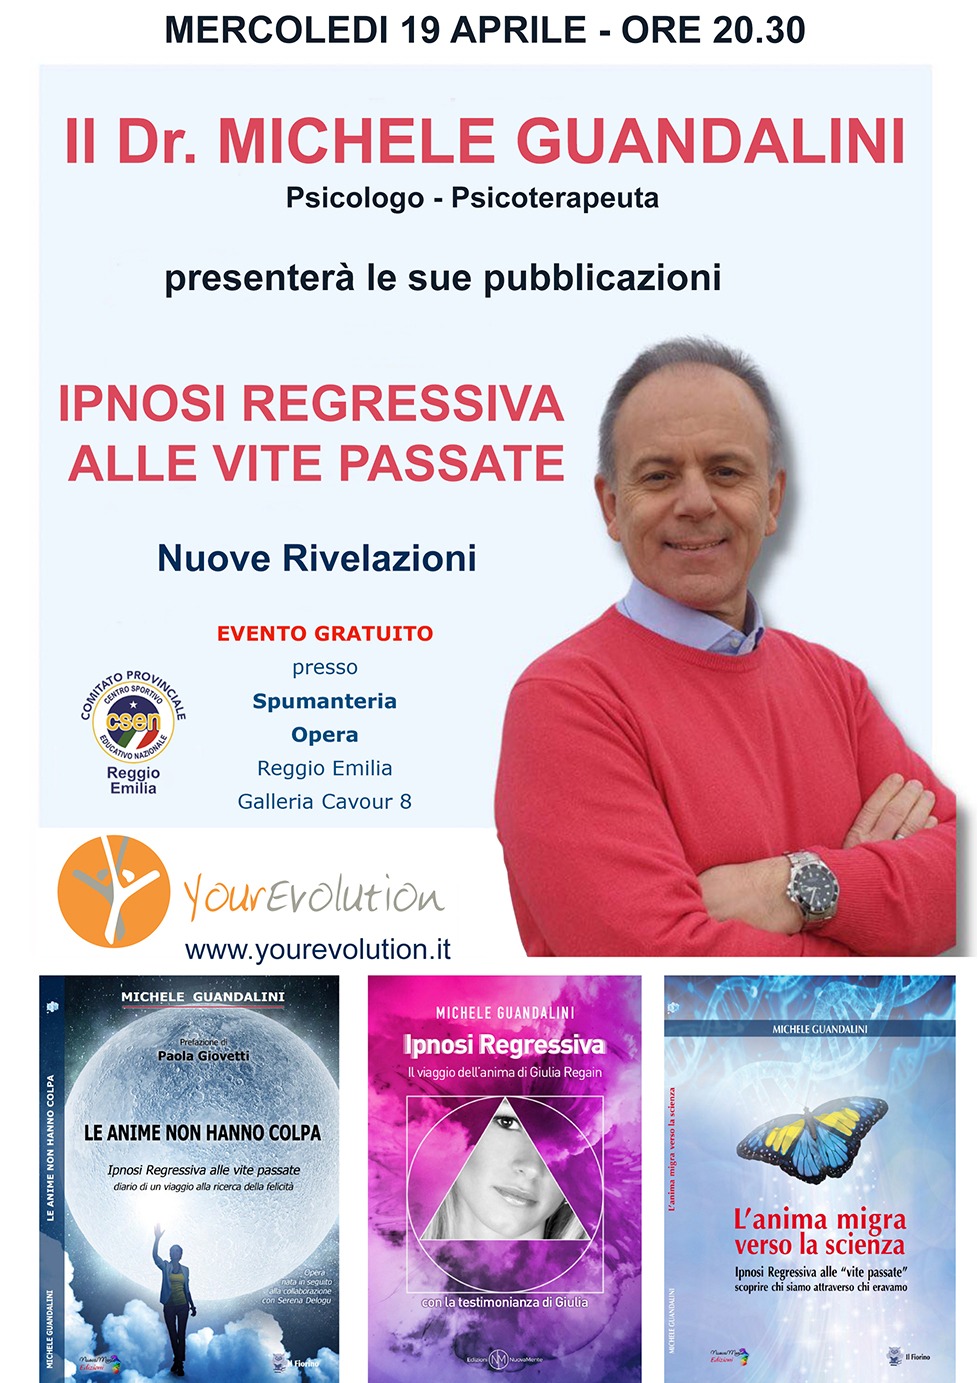 Michele Guandalini presenta le sue pubblicazioni sull'ipnosi regressiva